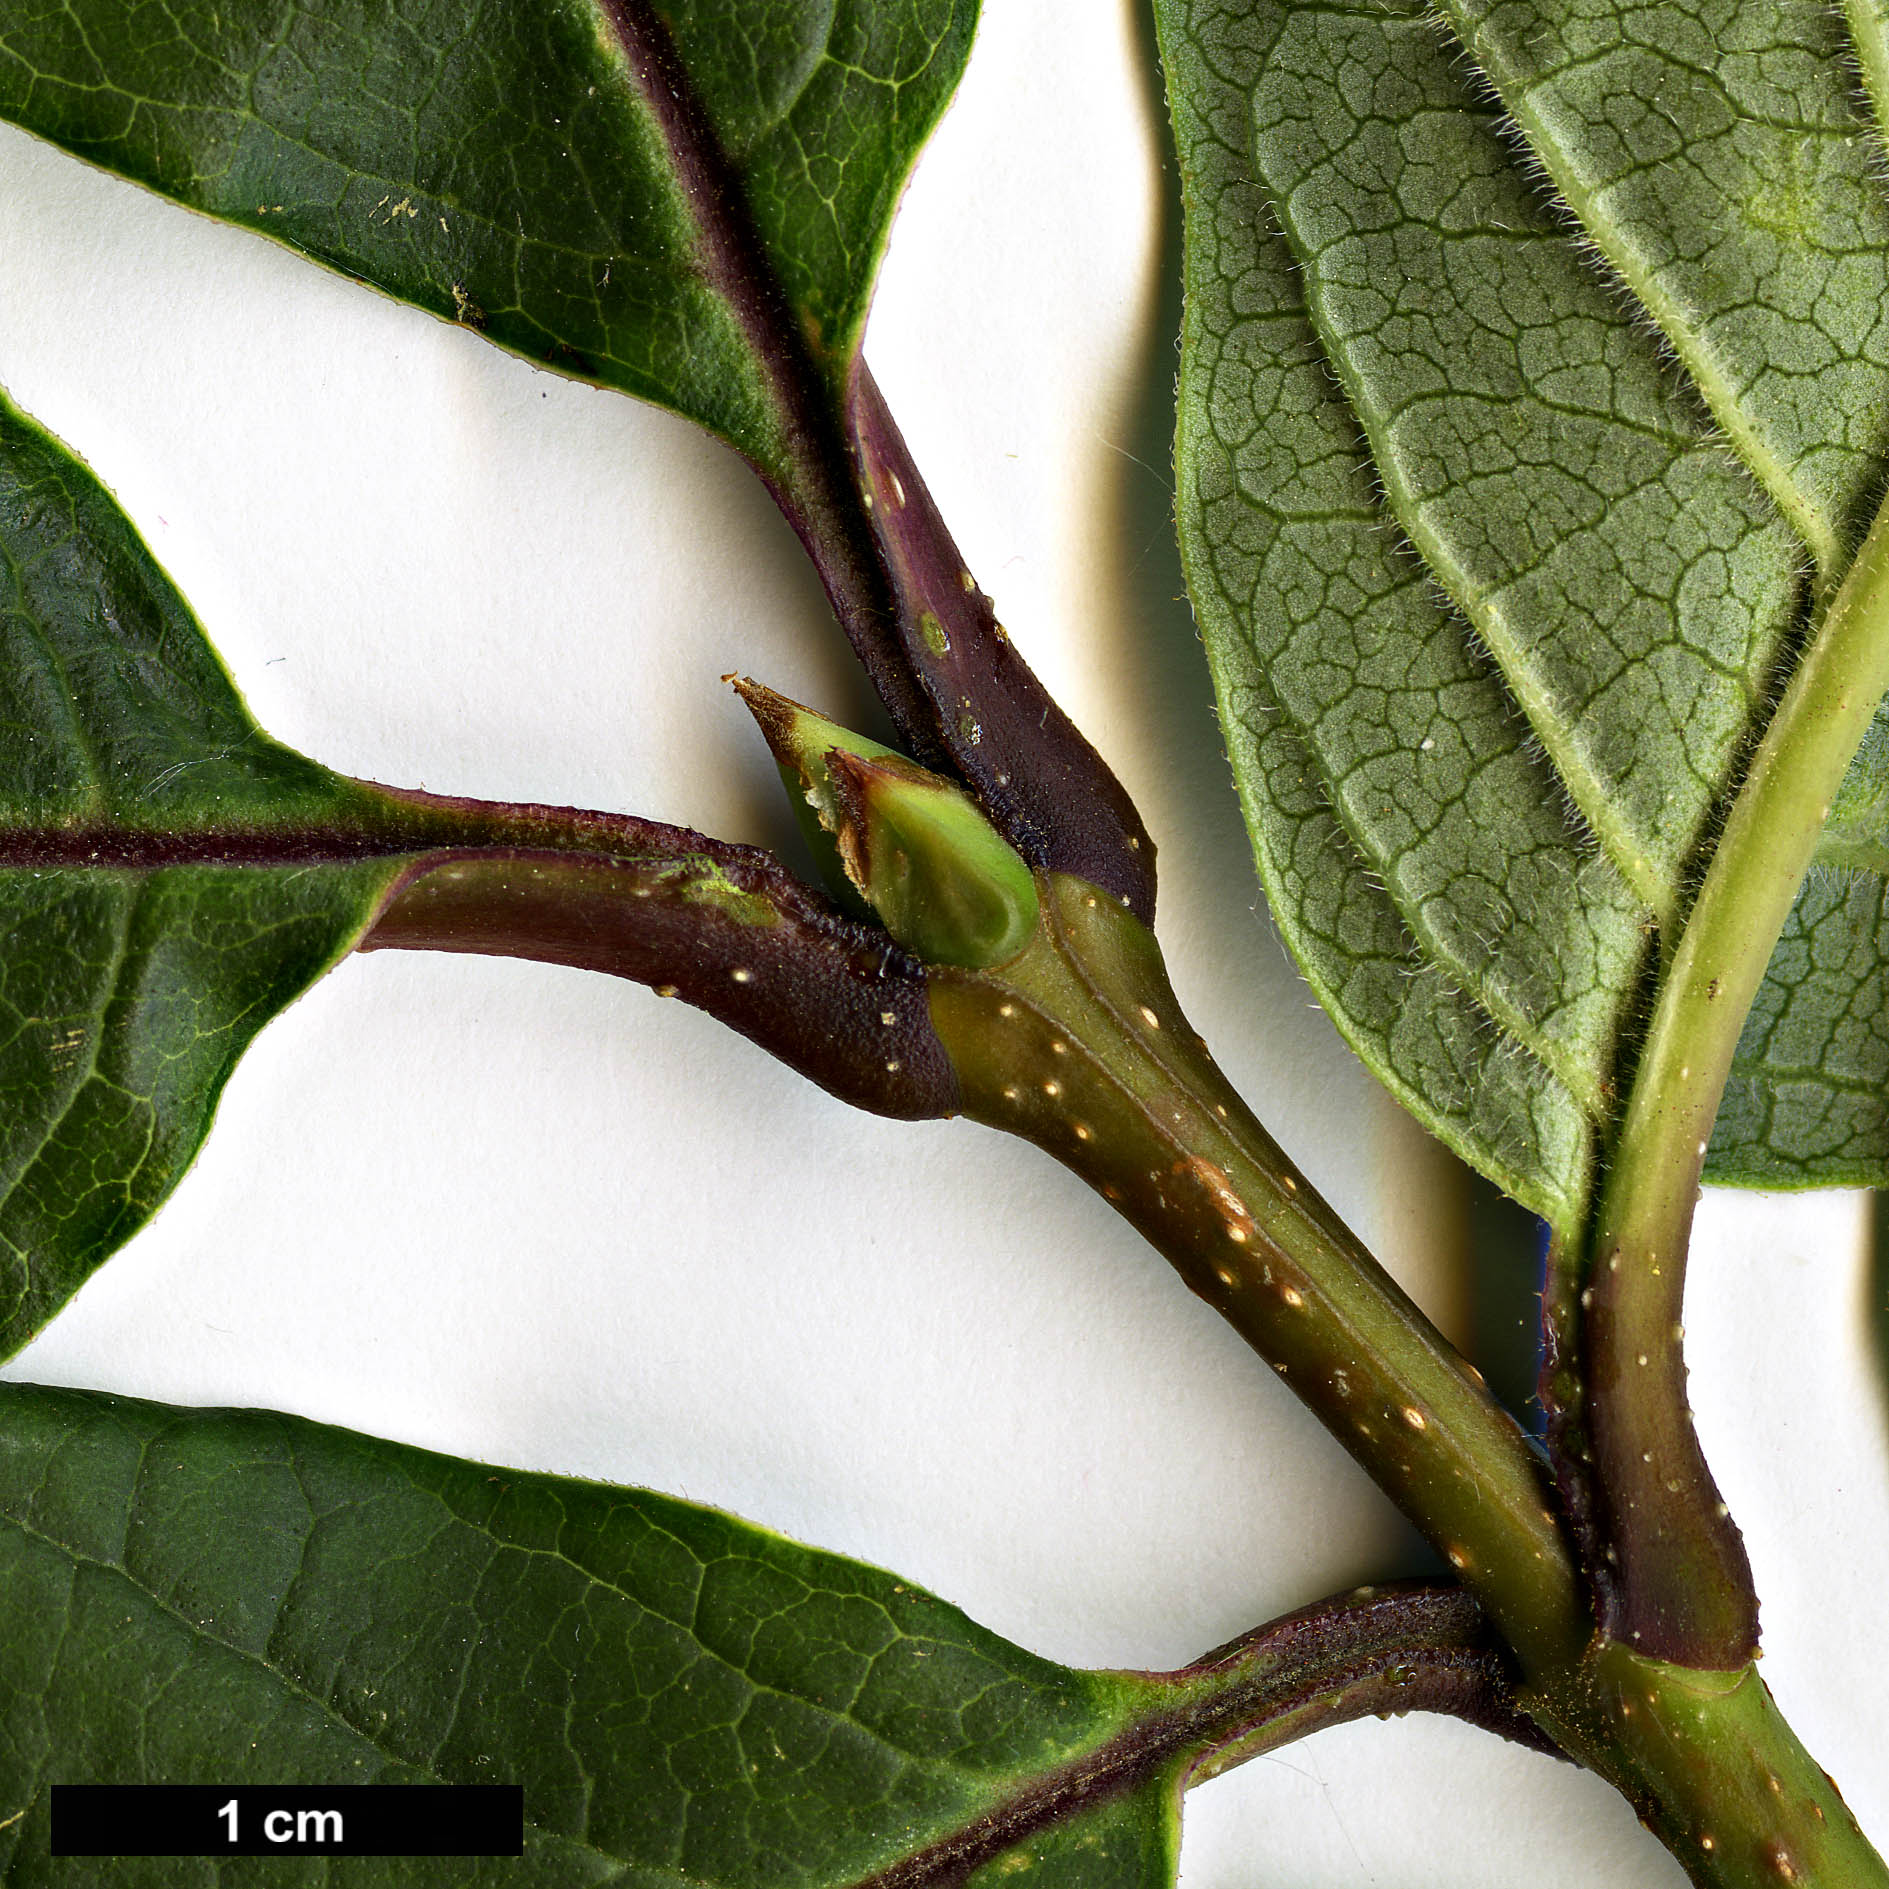 High resolution image: Family: Oleaceae - Genus: Syringa - Taxon: villosa - SpeciesSub: subsp. wolfii